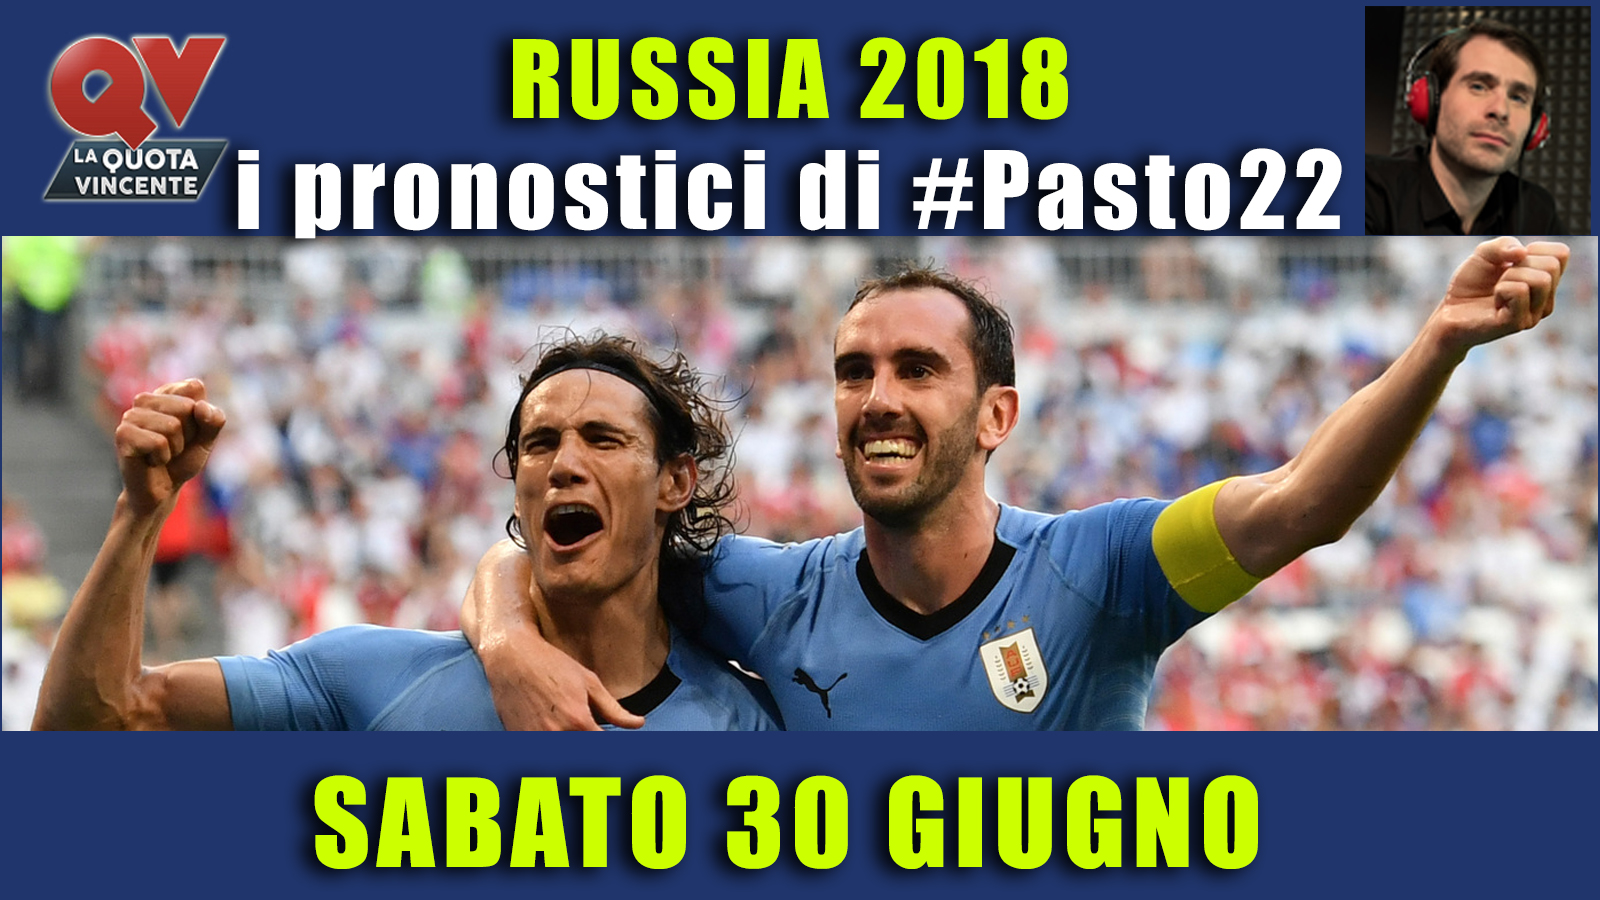 Pronostici Mondiali 30 giugno: le dritte di #Pasto22 a Russia 2018